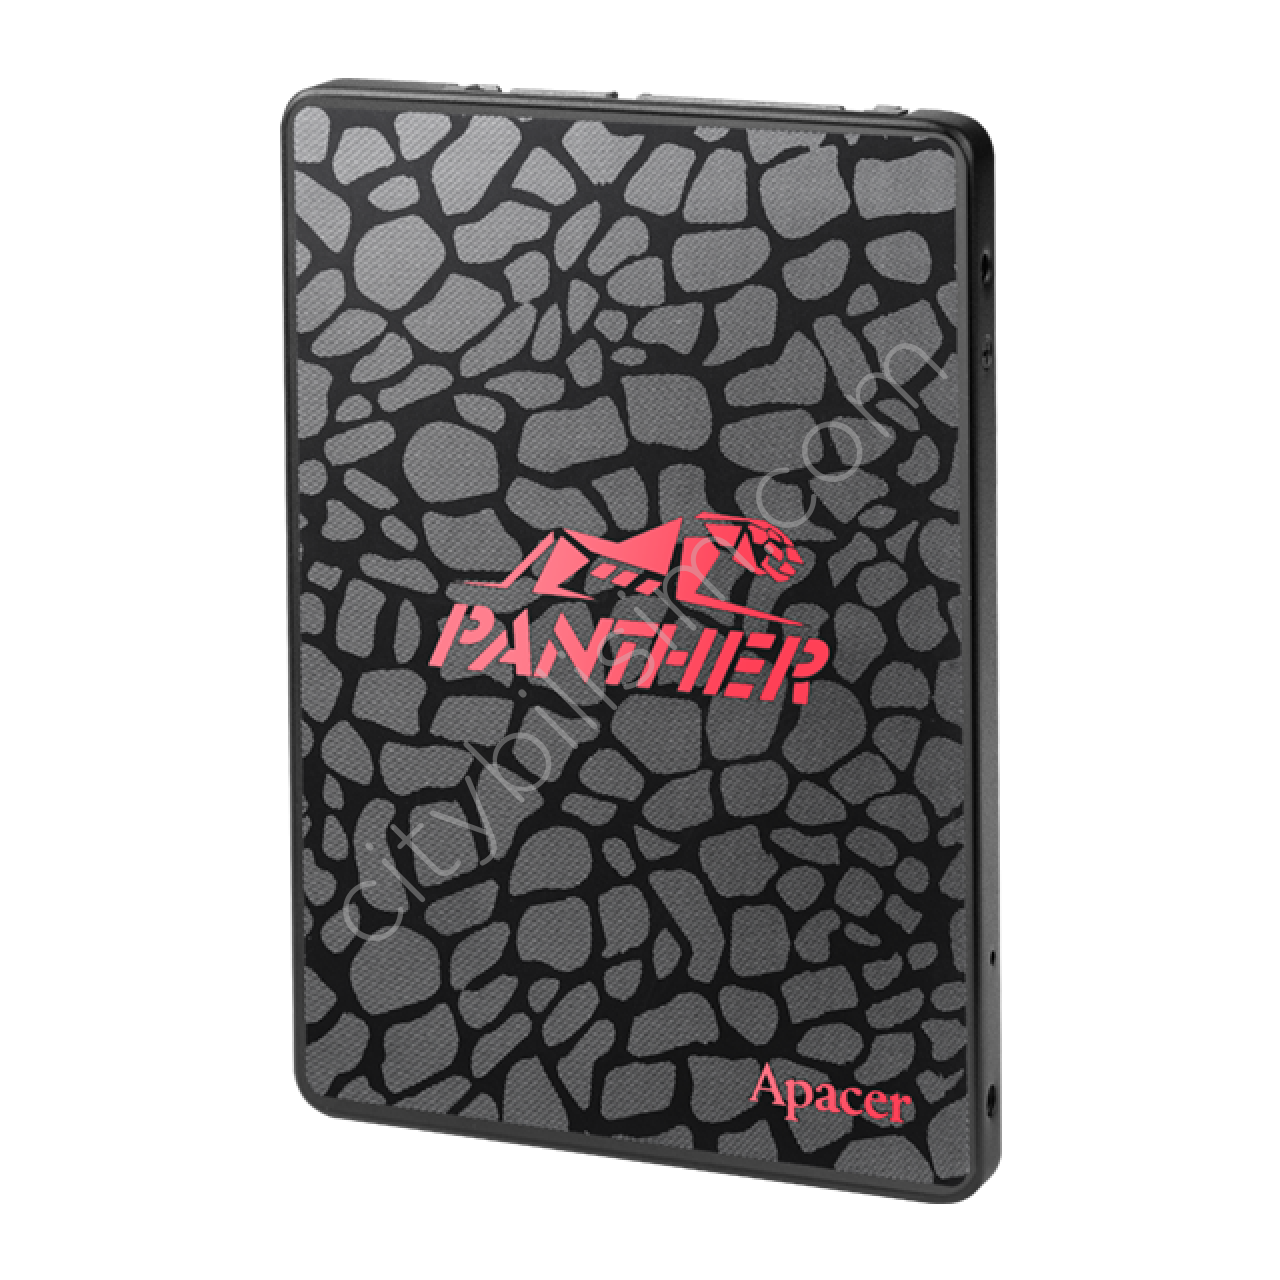 Apacer Panther AS350 128GB 560/540MB/s 2.5" SATA3 SSD Disk (AP128GAS350-1)